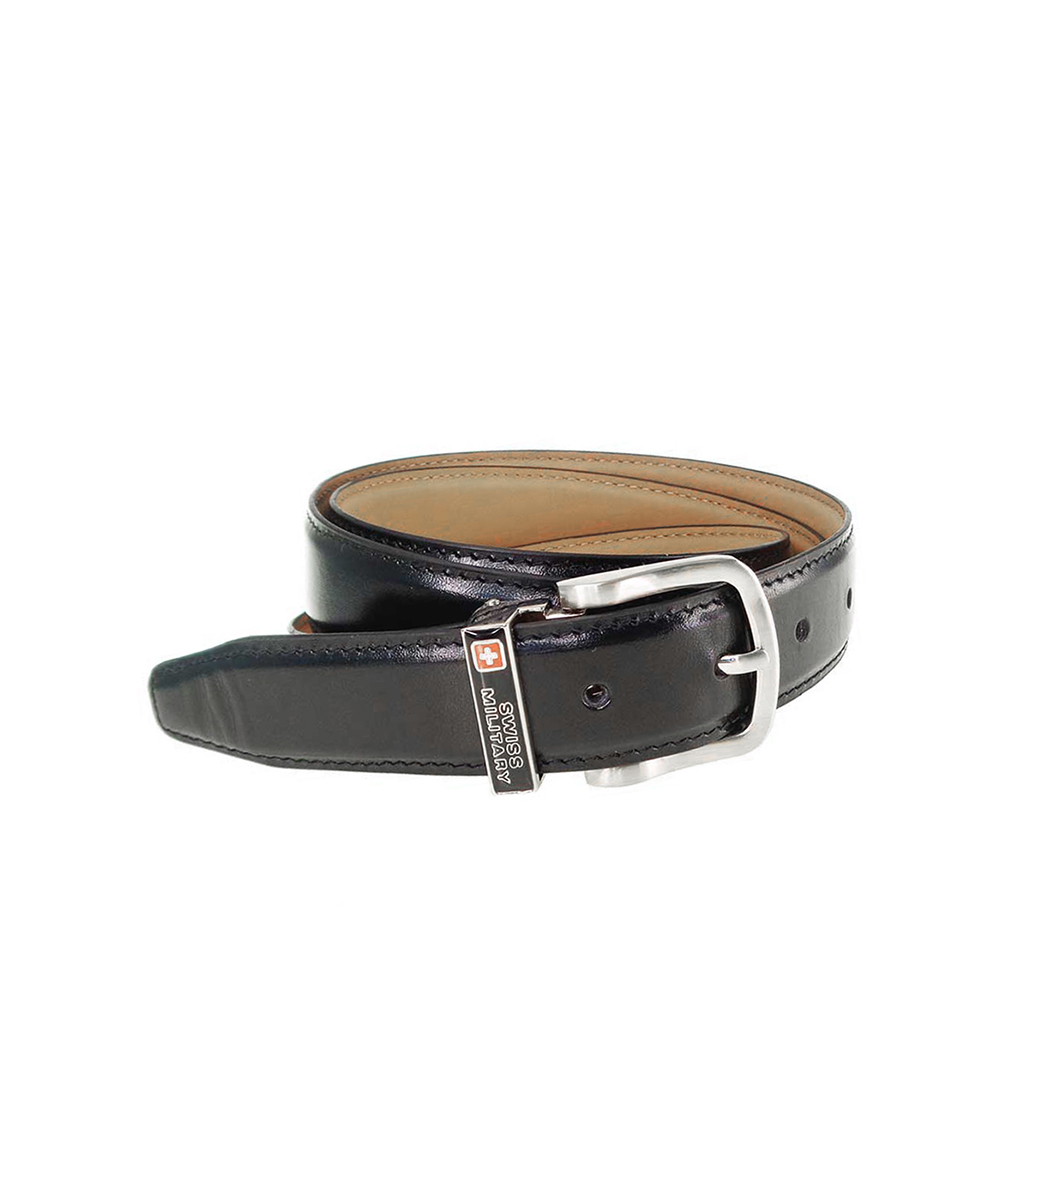 Belt, Belts, Leather Belt for men, belts for men formal, belts for men leather